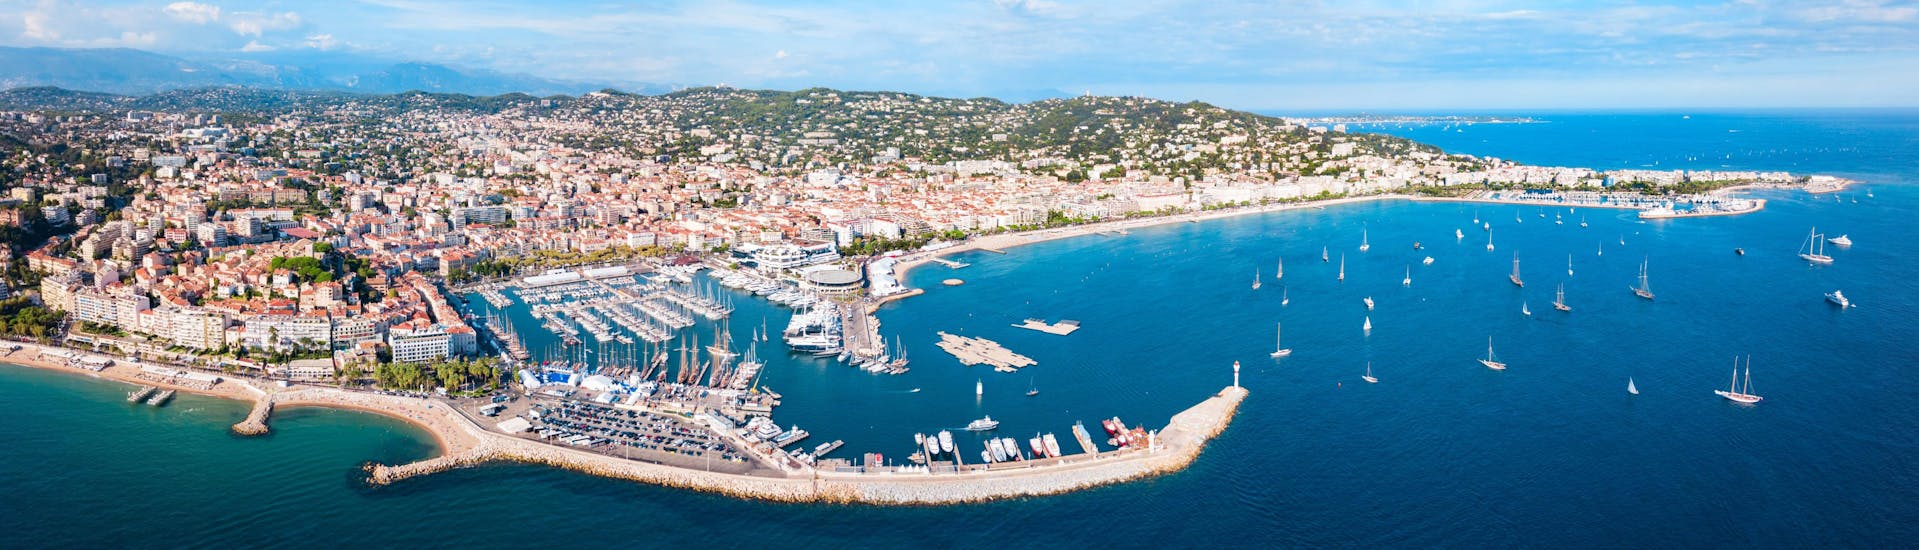 Foto van Cannes in Frankrijk waar je boottochten kunt boeken.